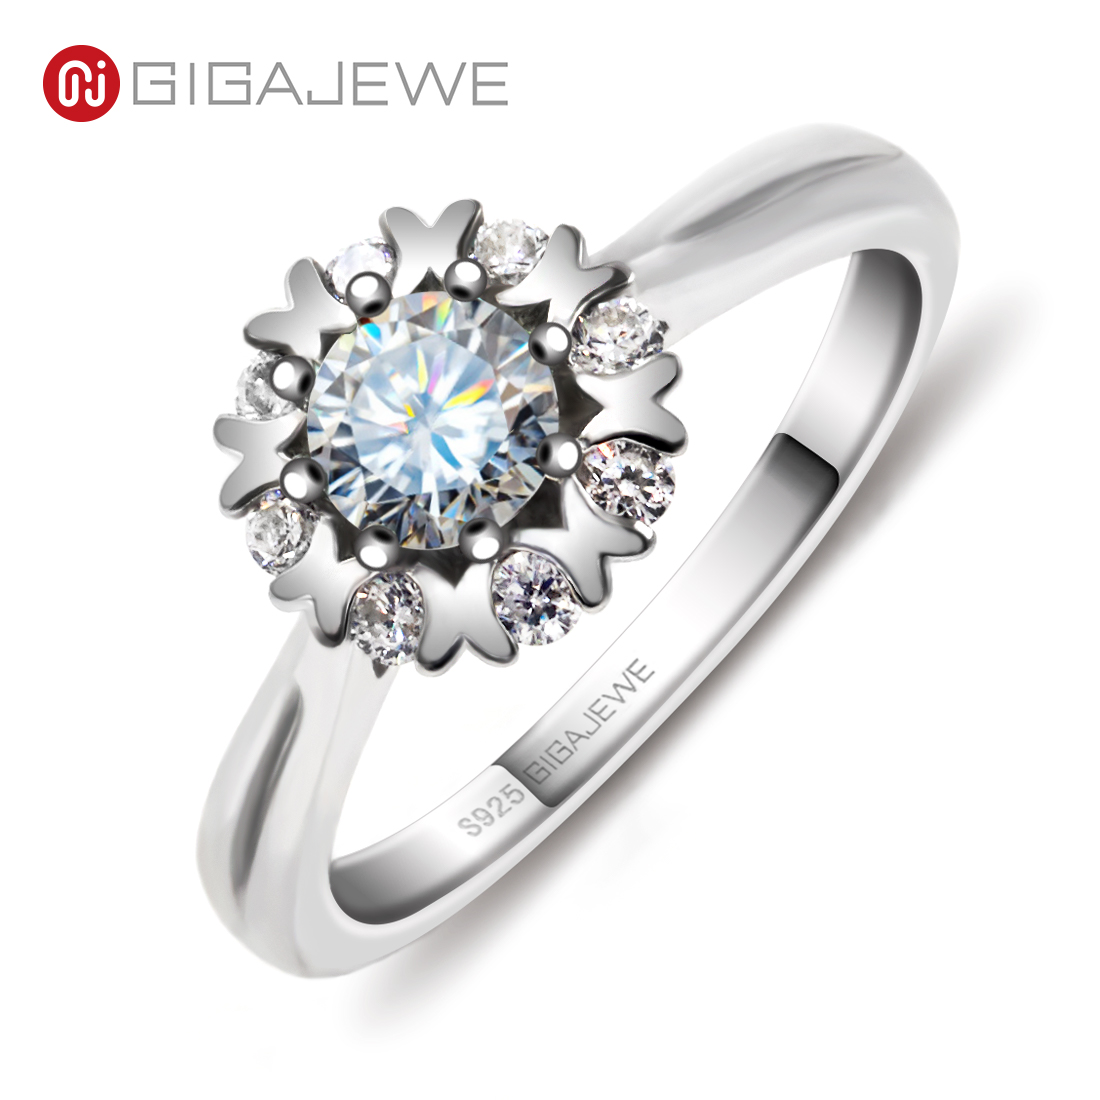 GIGAJEWE 莫桑钻戒指 0.5ct 5mm 圆形切割 EF 颜色 925 银金色多层镀金时尚爱情信物女士女孩礼物